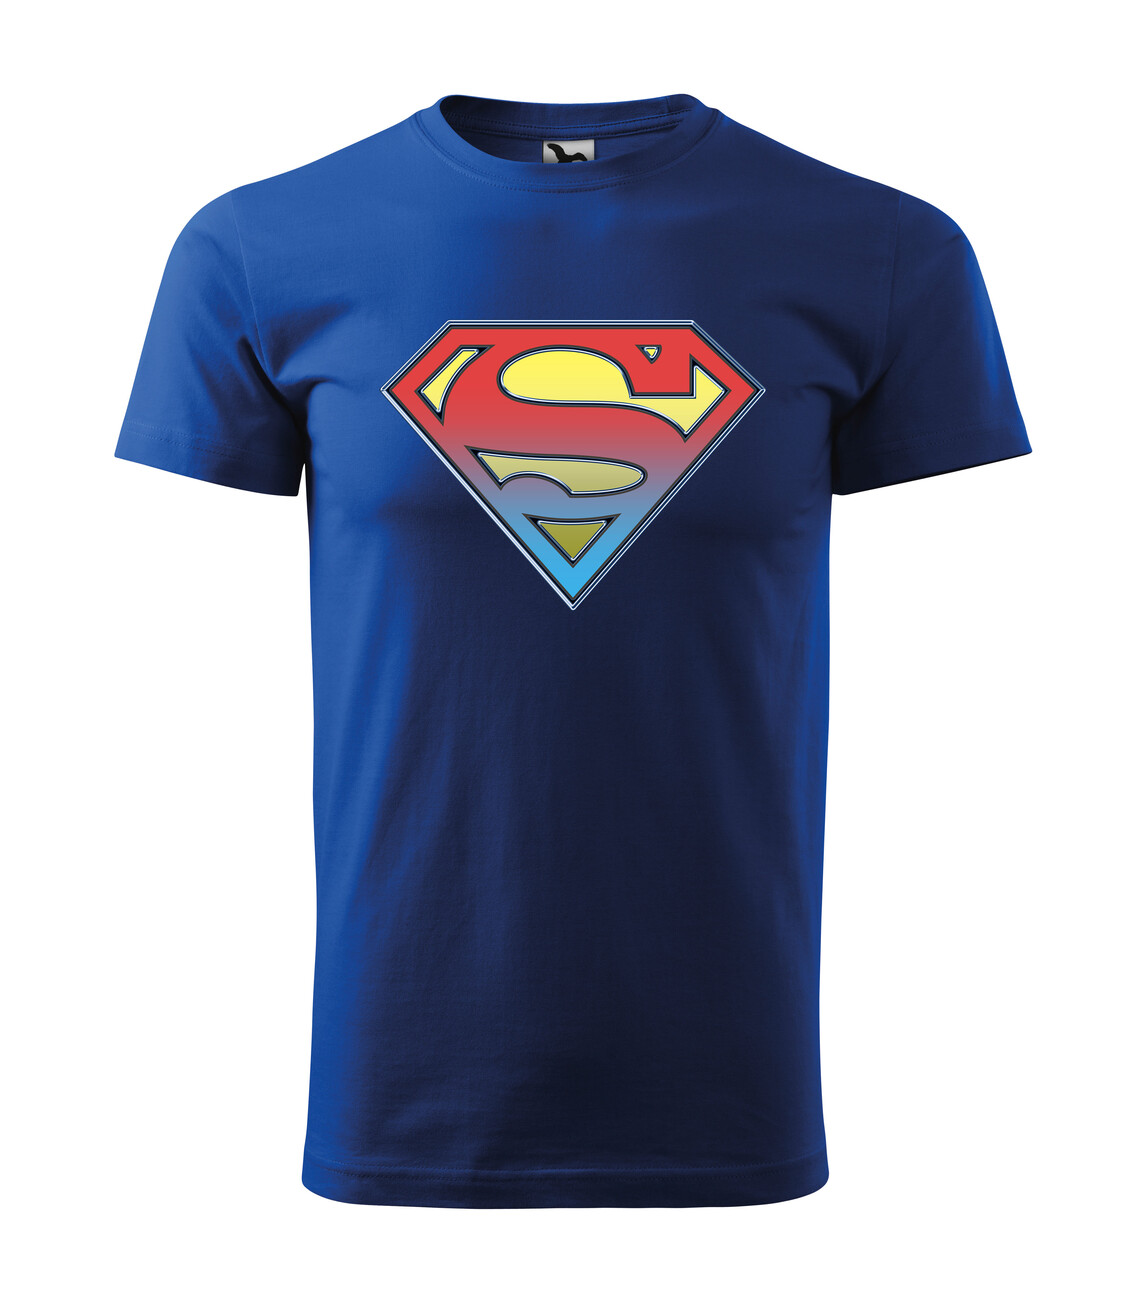 realiteit Tolk Broer The Superman - Logo | Kleding en accessoires voor fans van merchandise